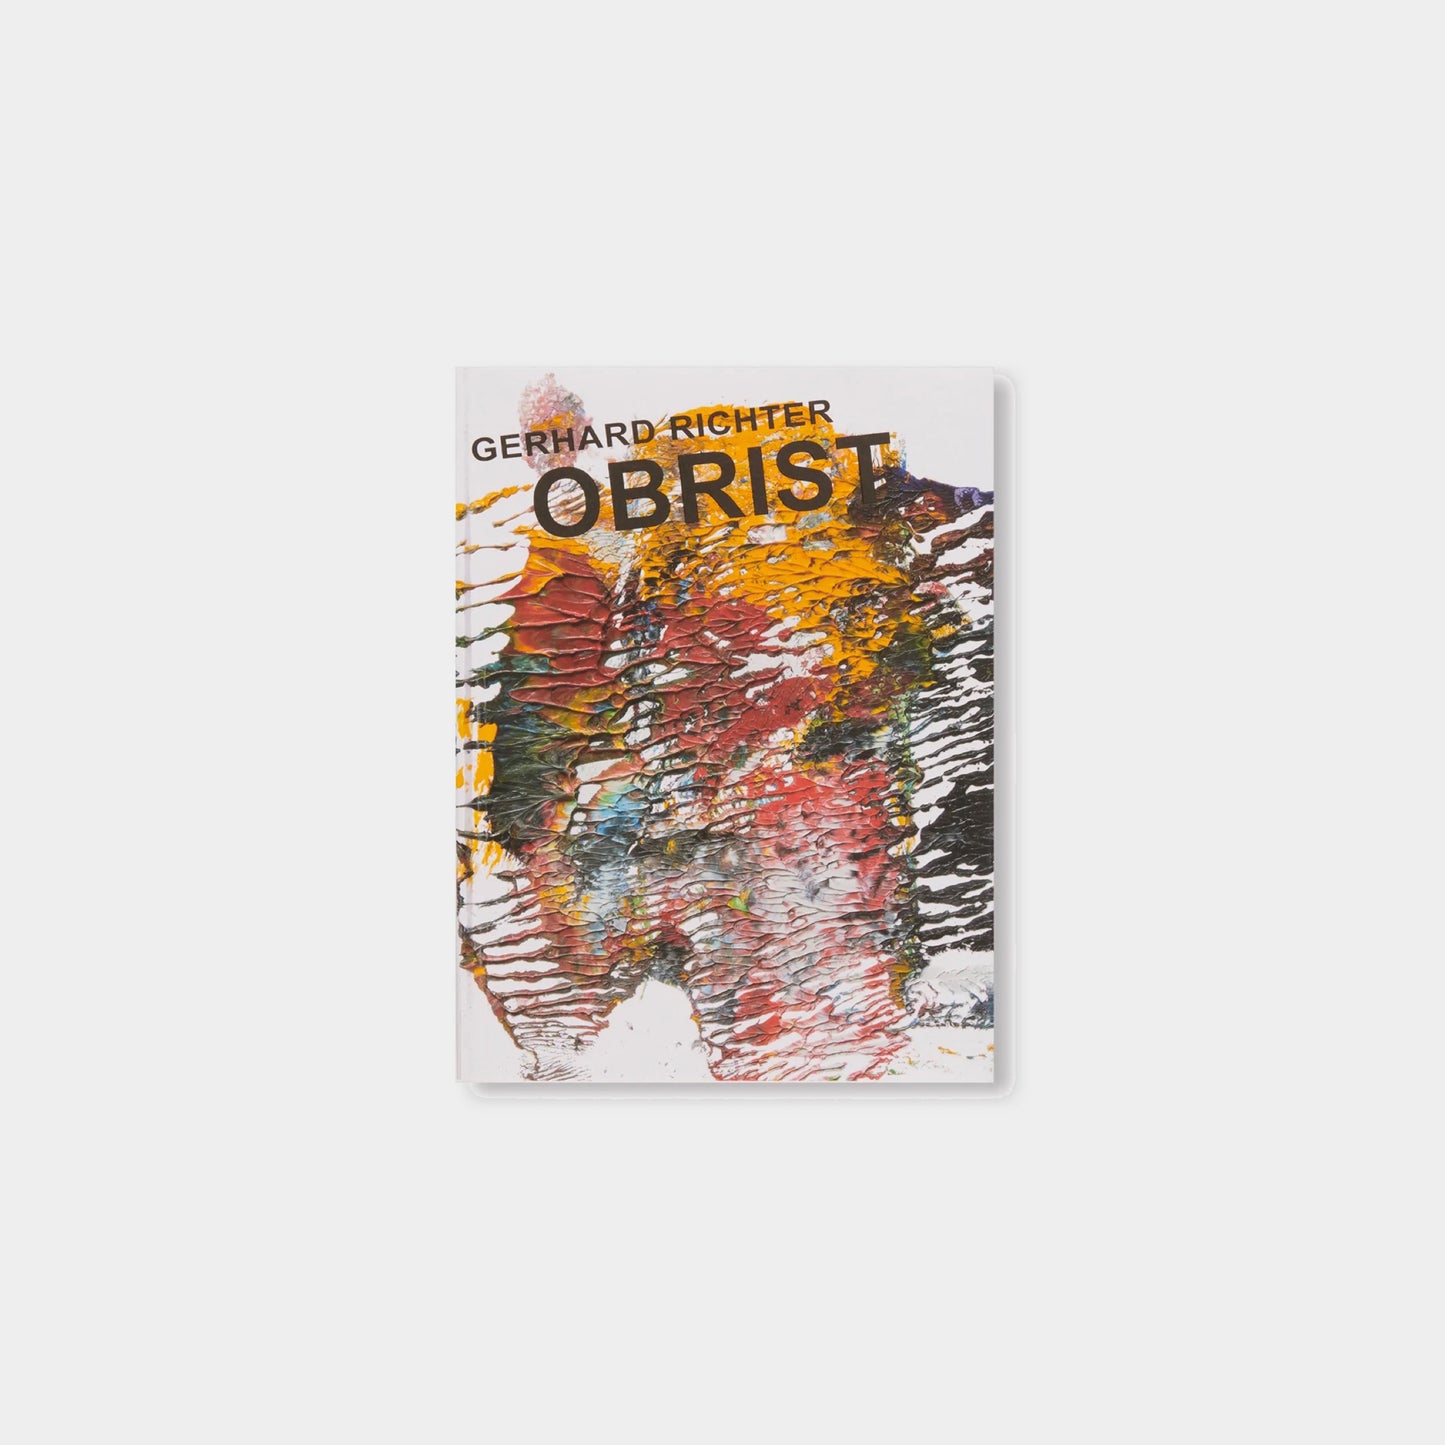 GERHARD RICHTER: OBRIST-O'BRIST by Gerhard Richter